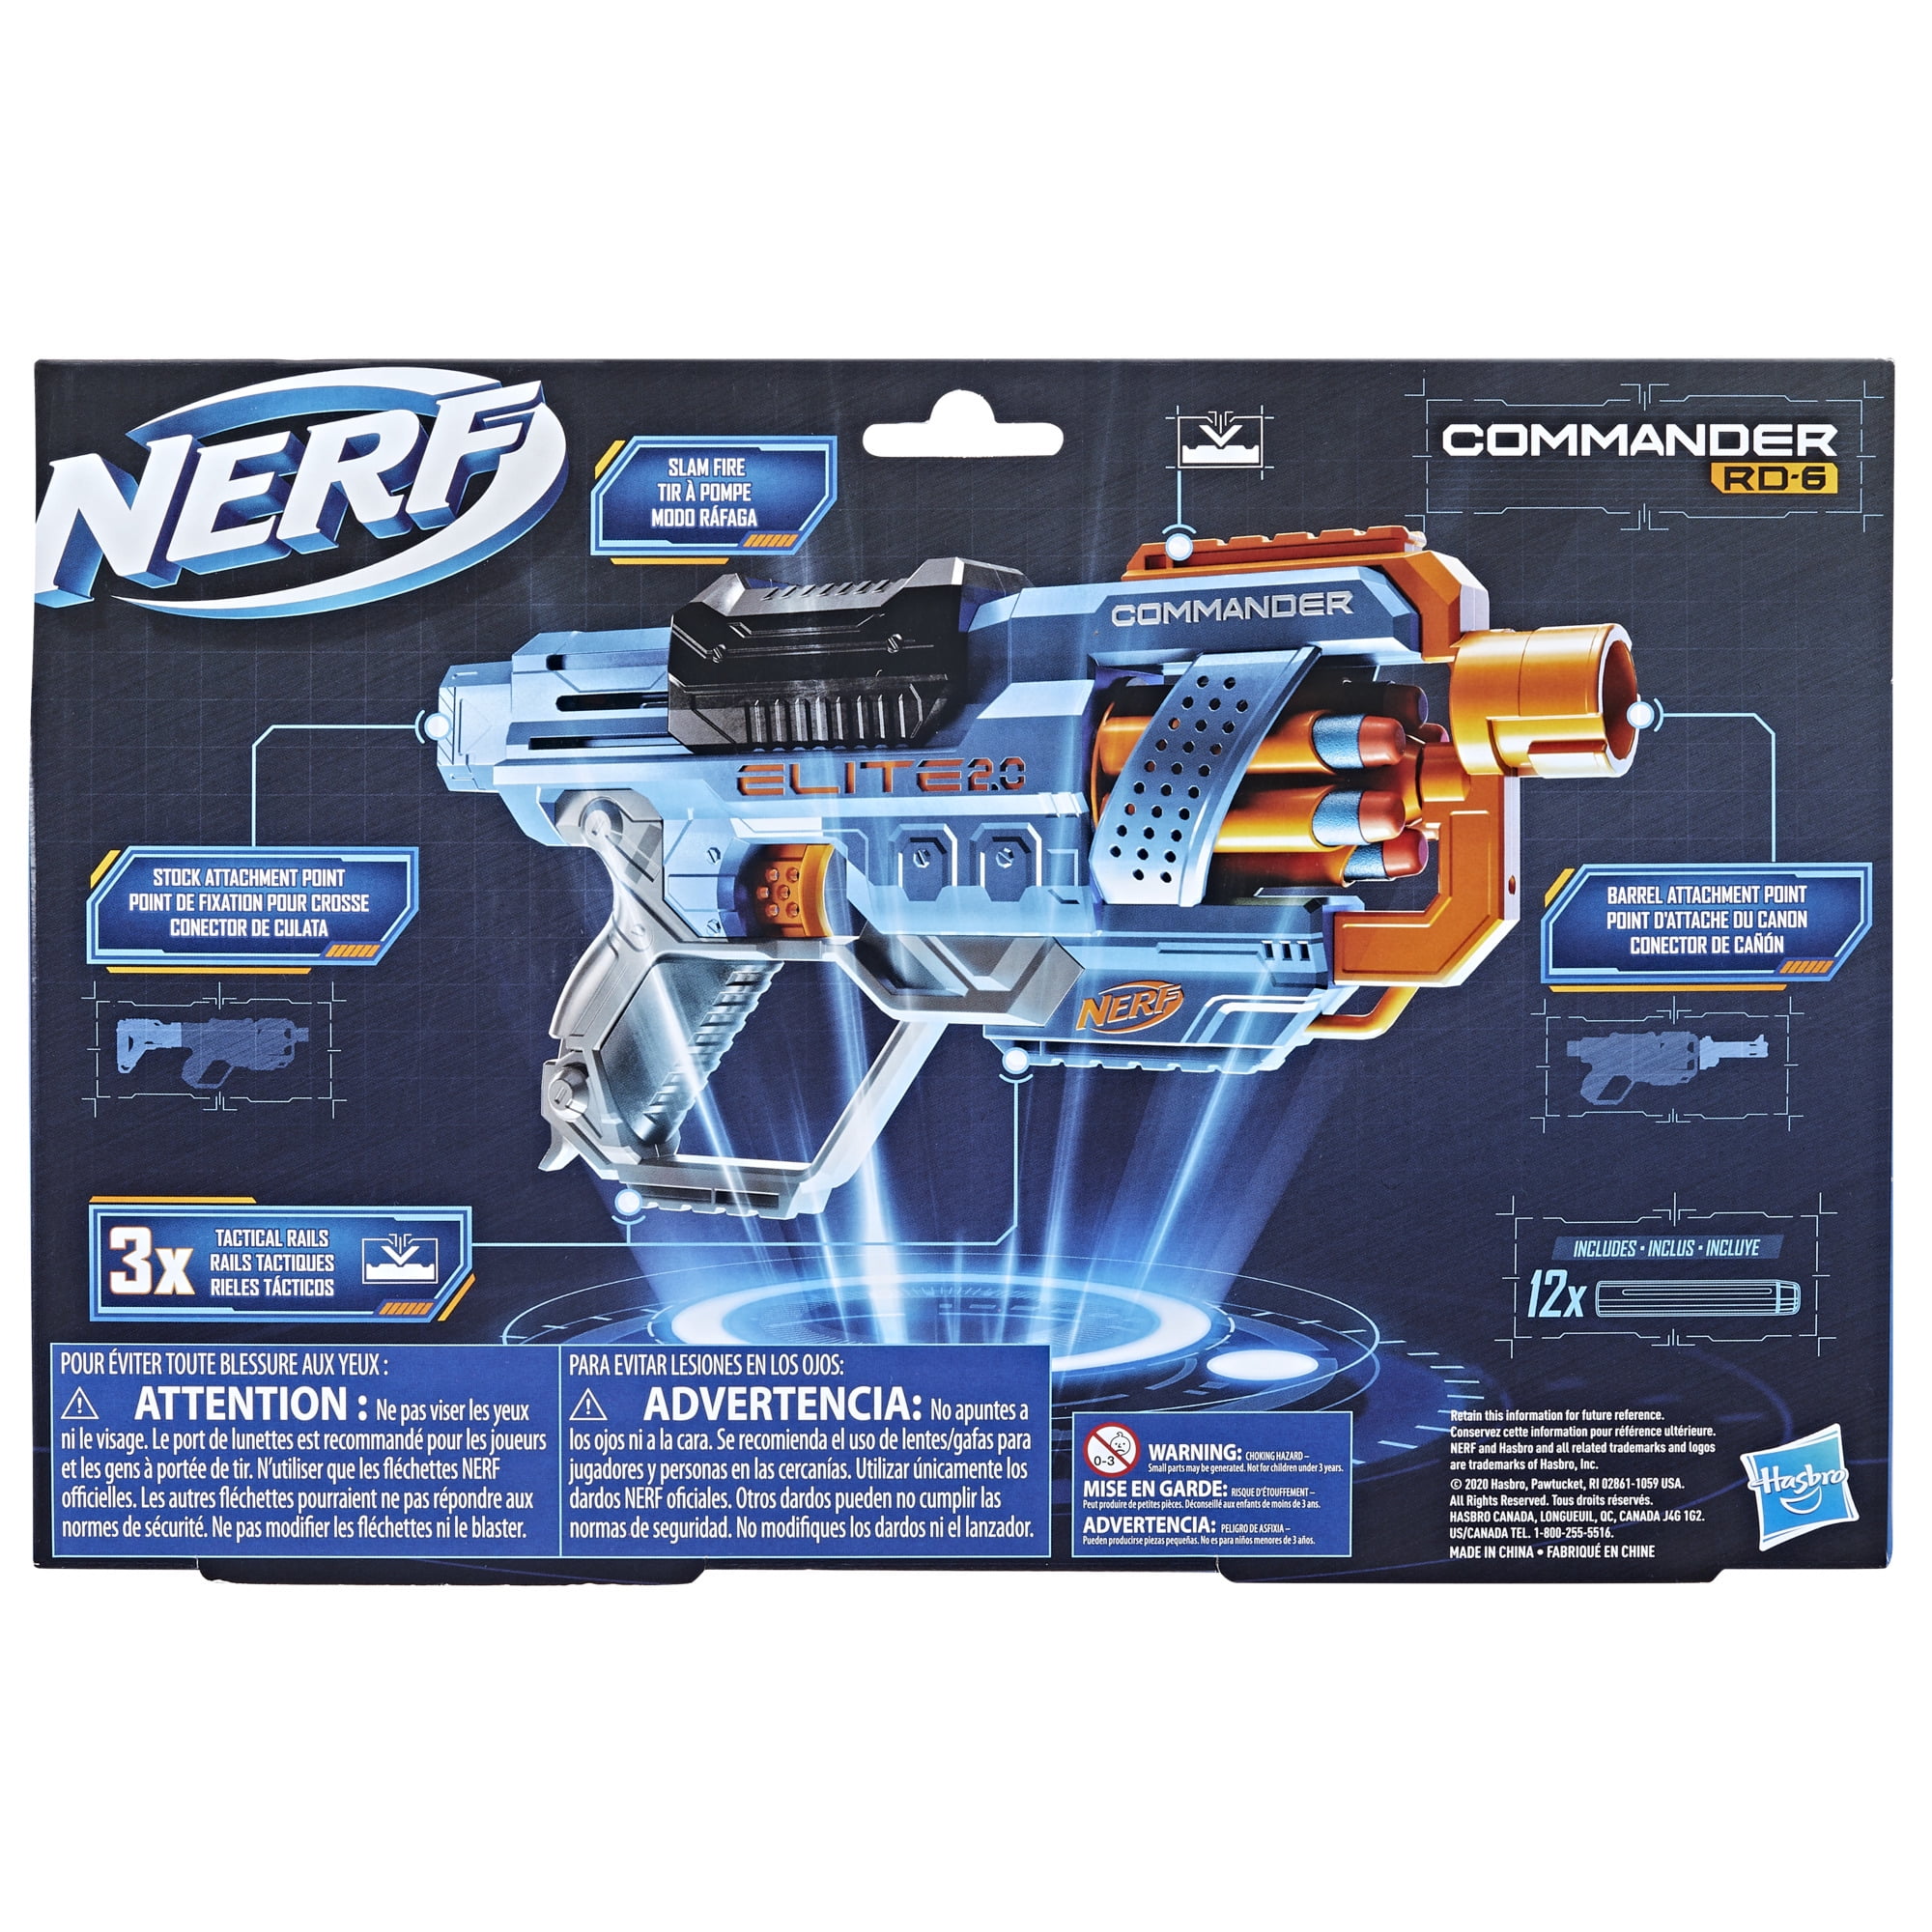 Nerf Elite 2.0 Commander RD-6 Blaster at Toys R Us UK